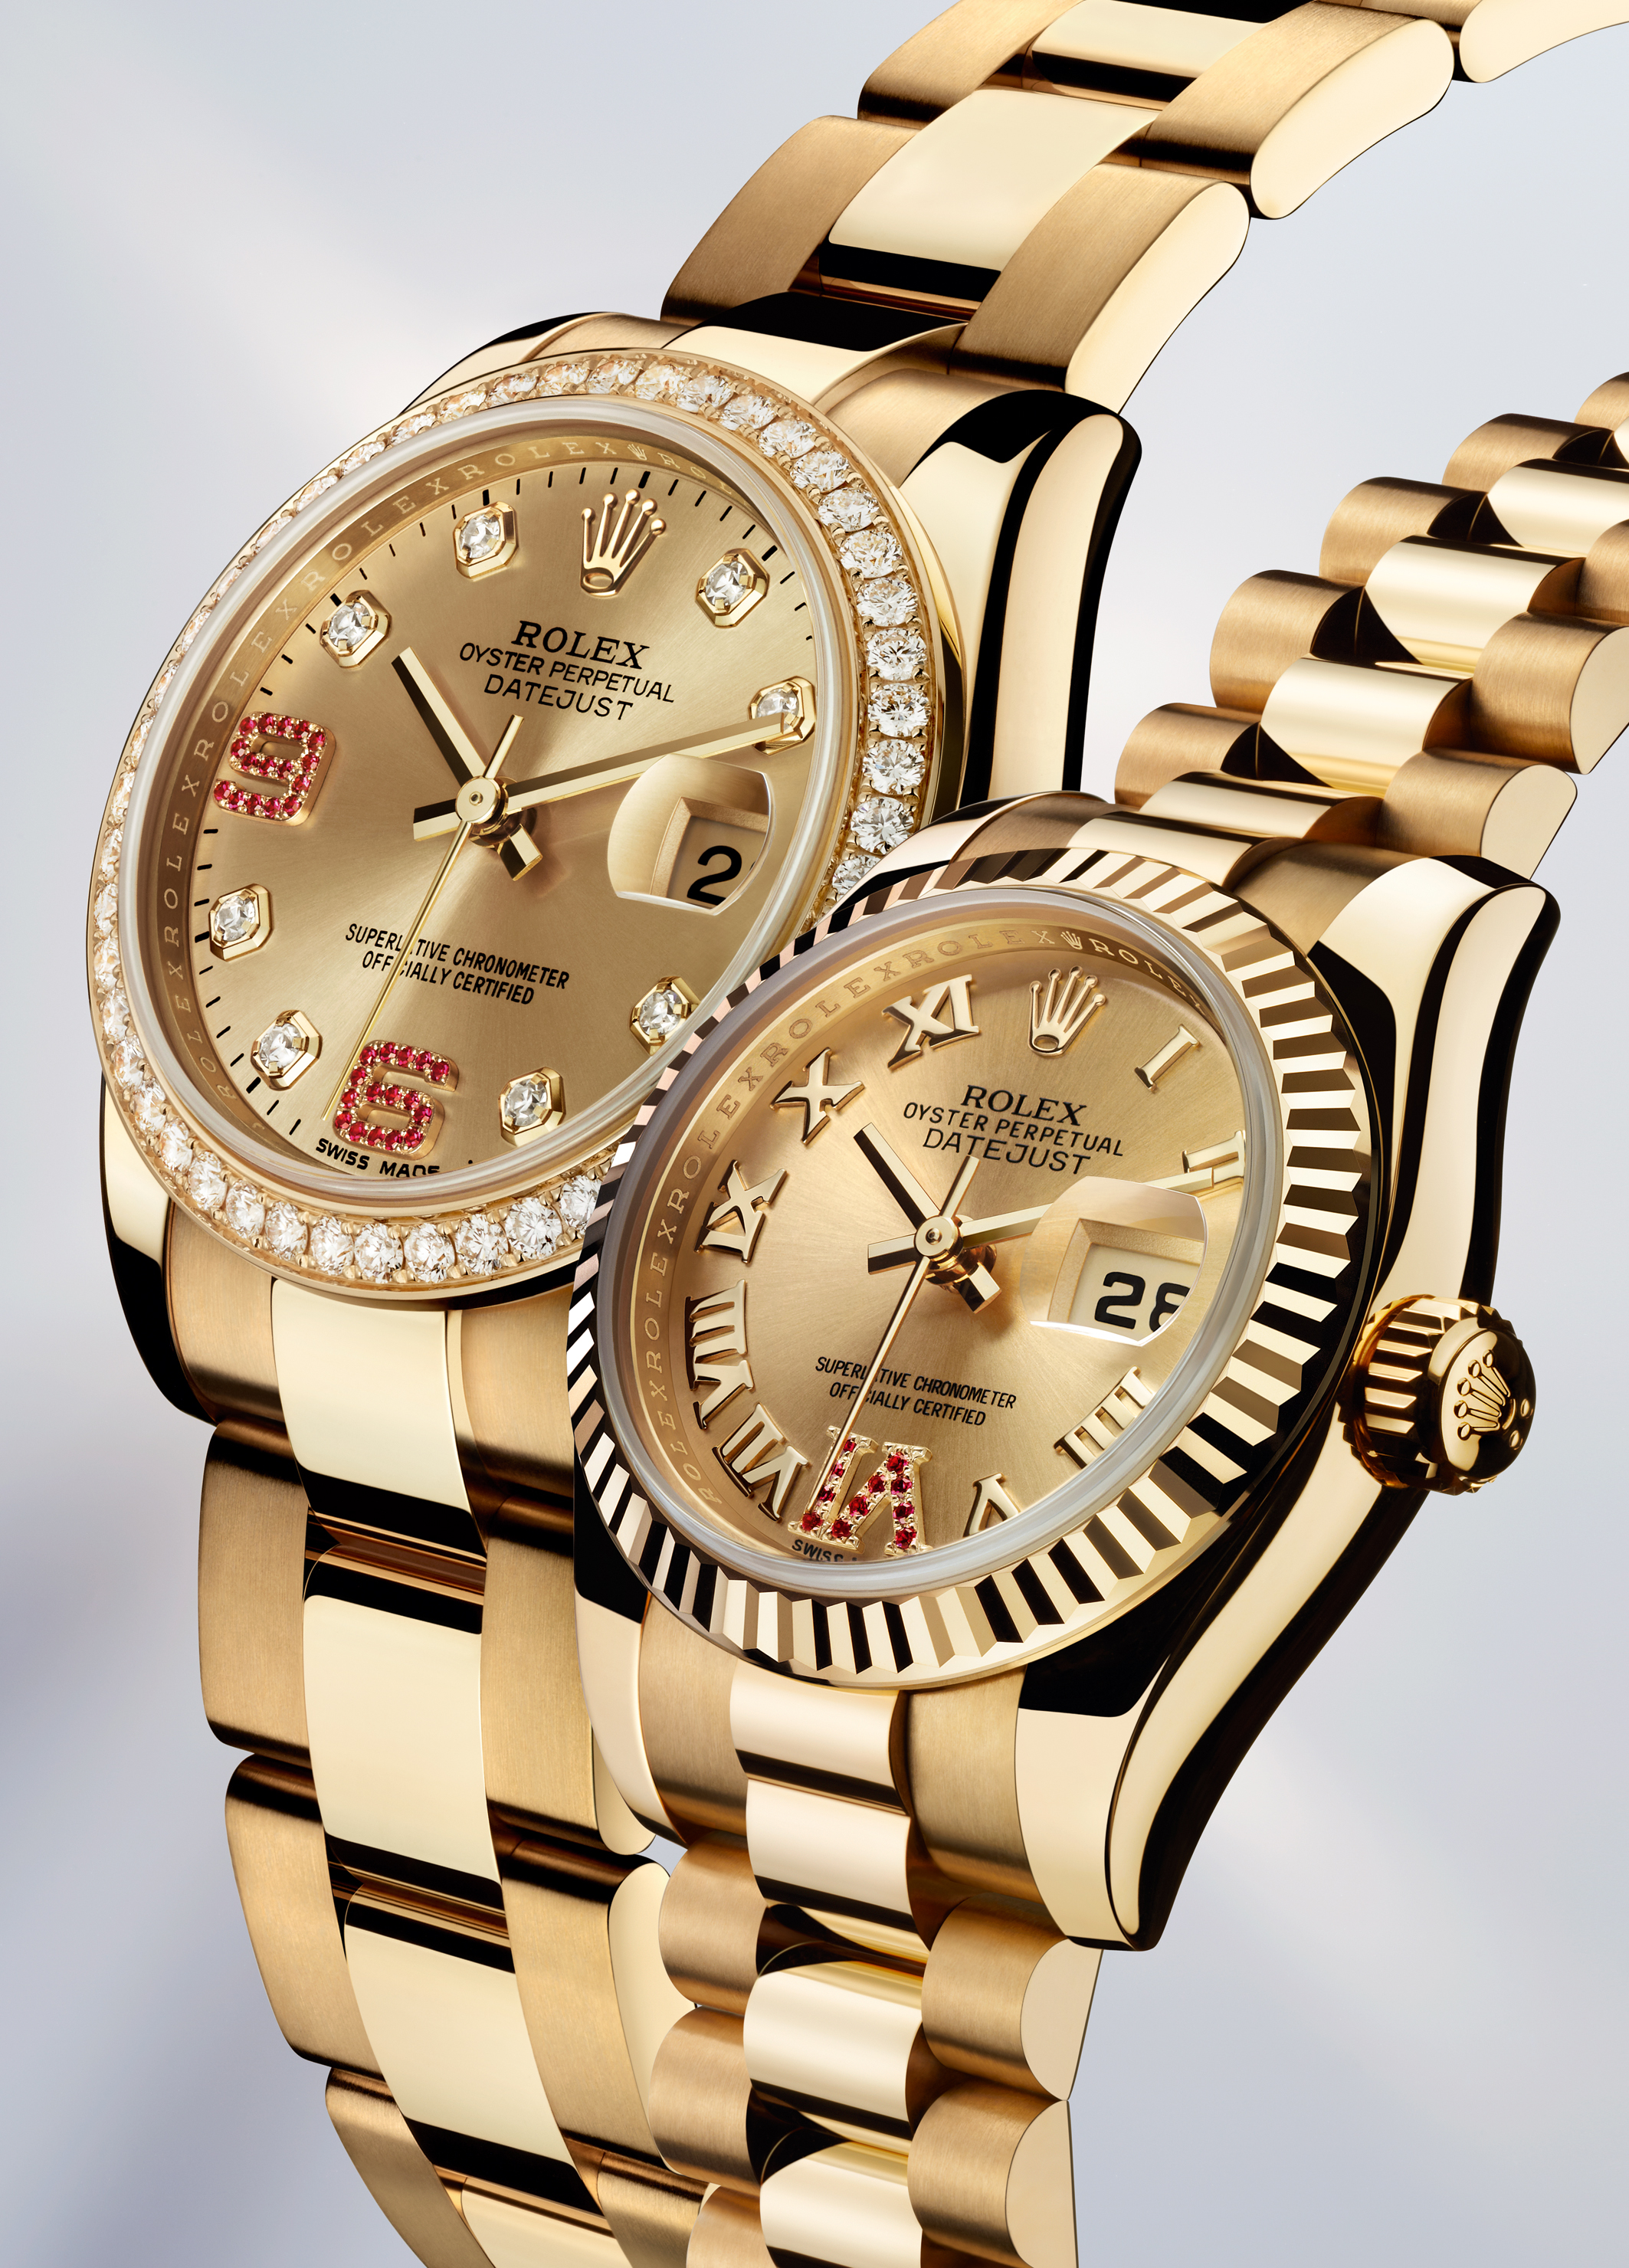 Английский цены часов. Часы ролекс. Часы ролекс оригинал. Швейцарские часы ролекс. Rolex часы Original.